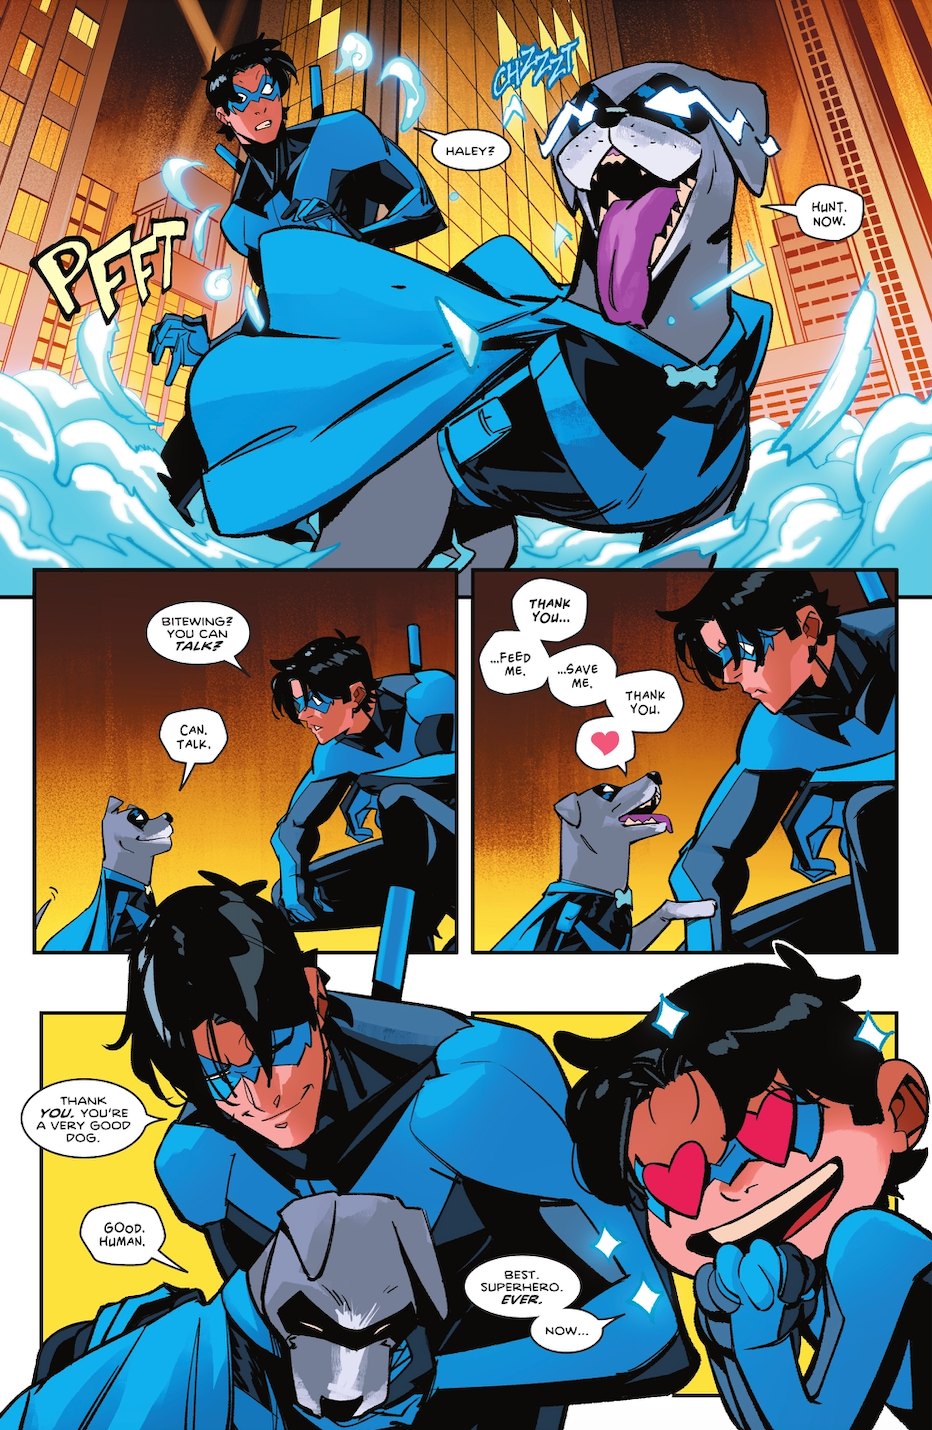 Le chien de compagnie de Nightwing vient de recevoir un costume - et le pouvoir de parler